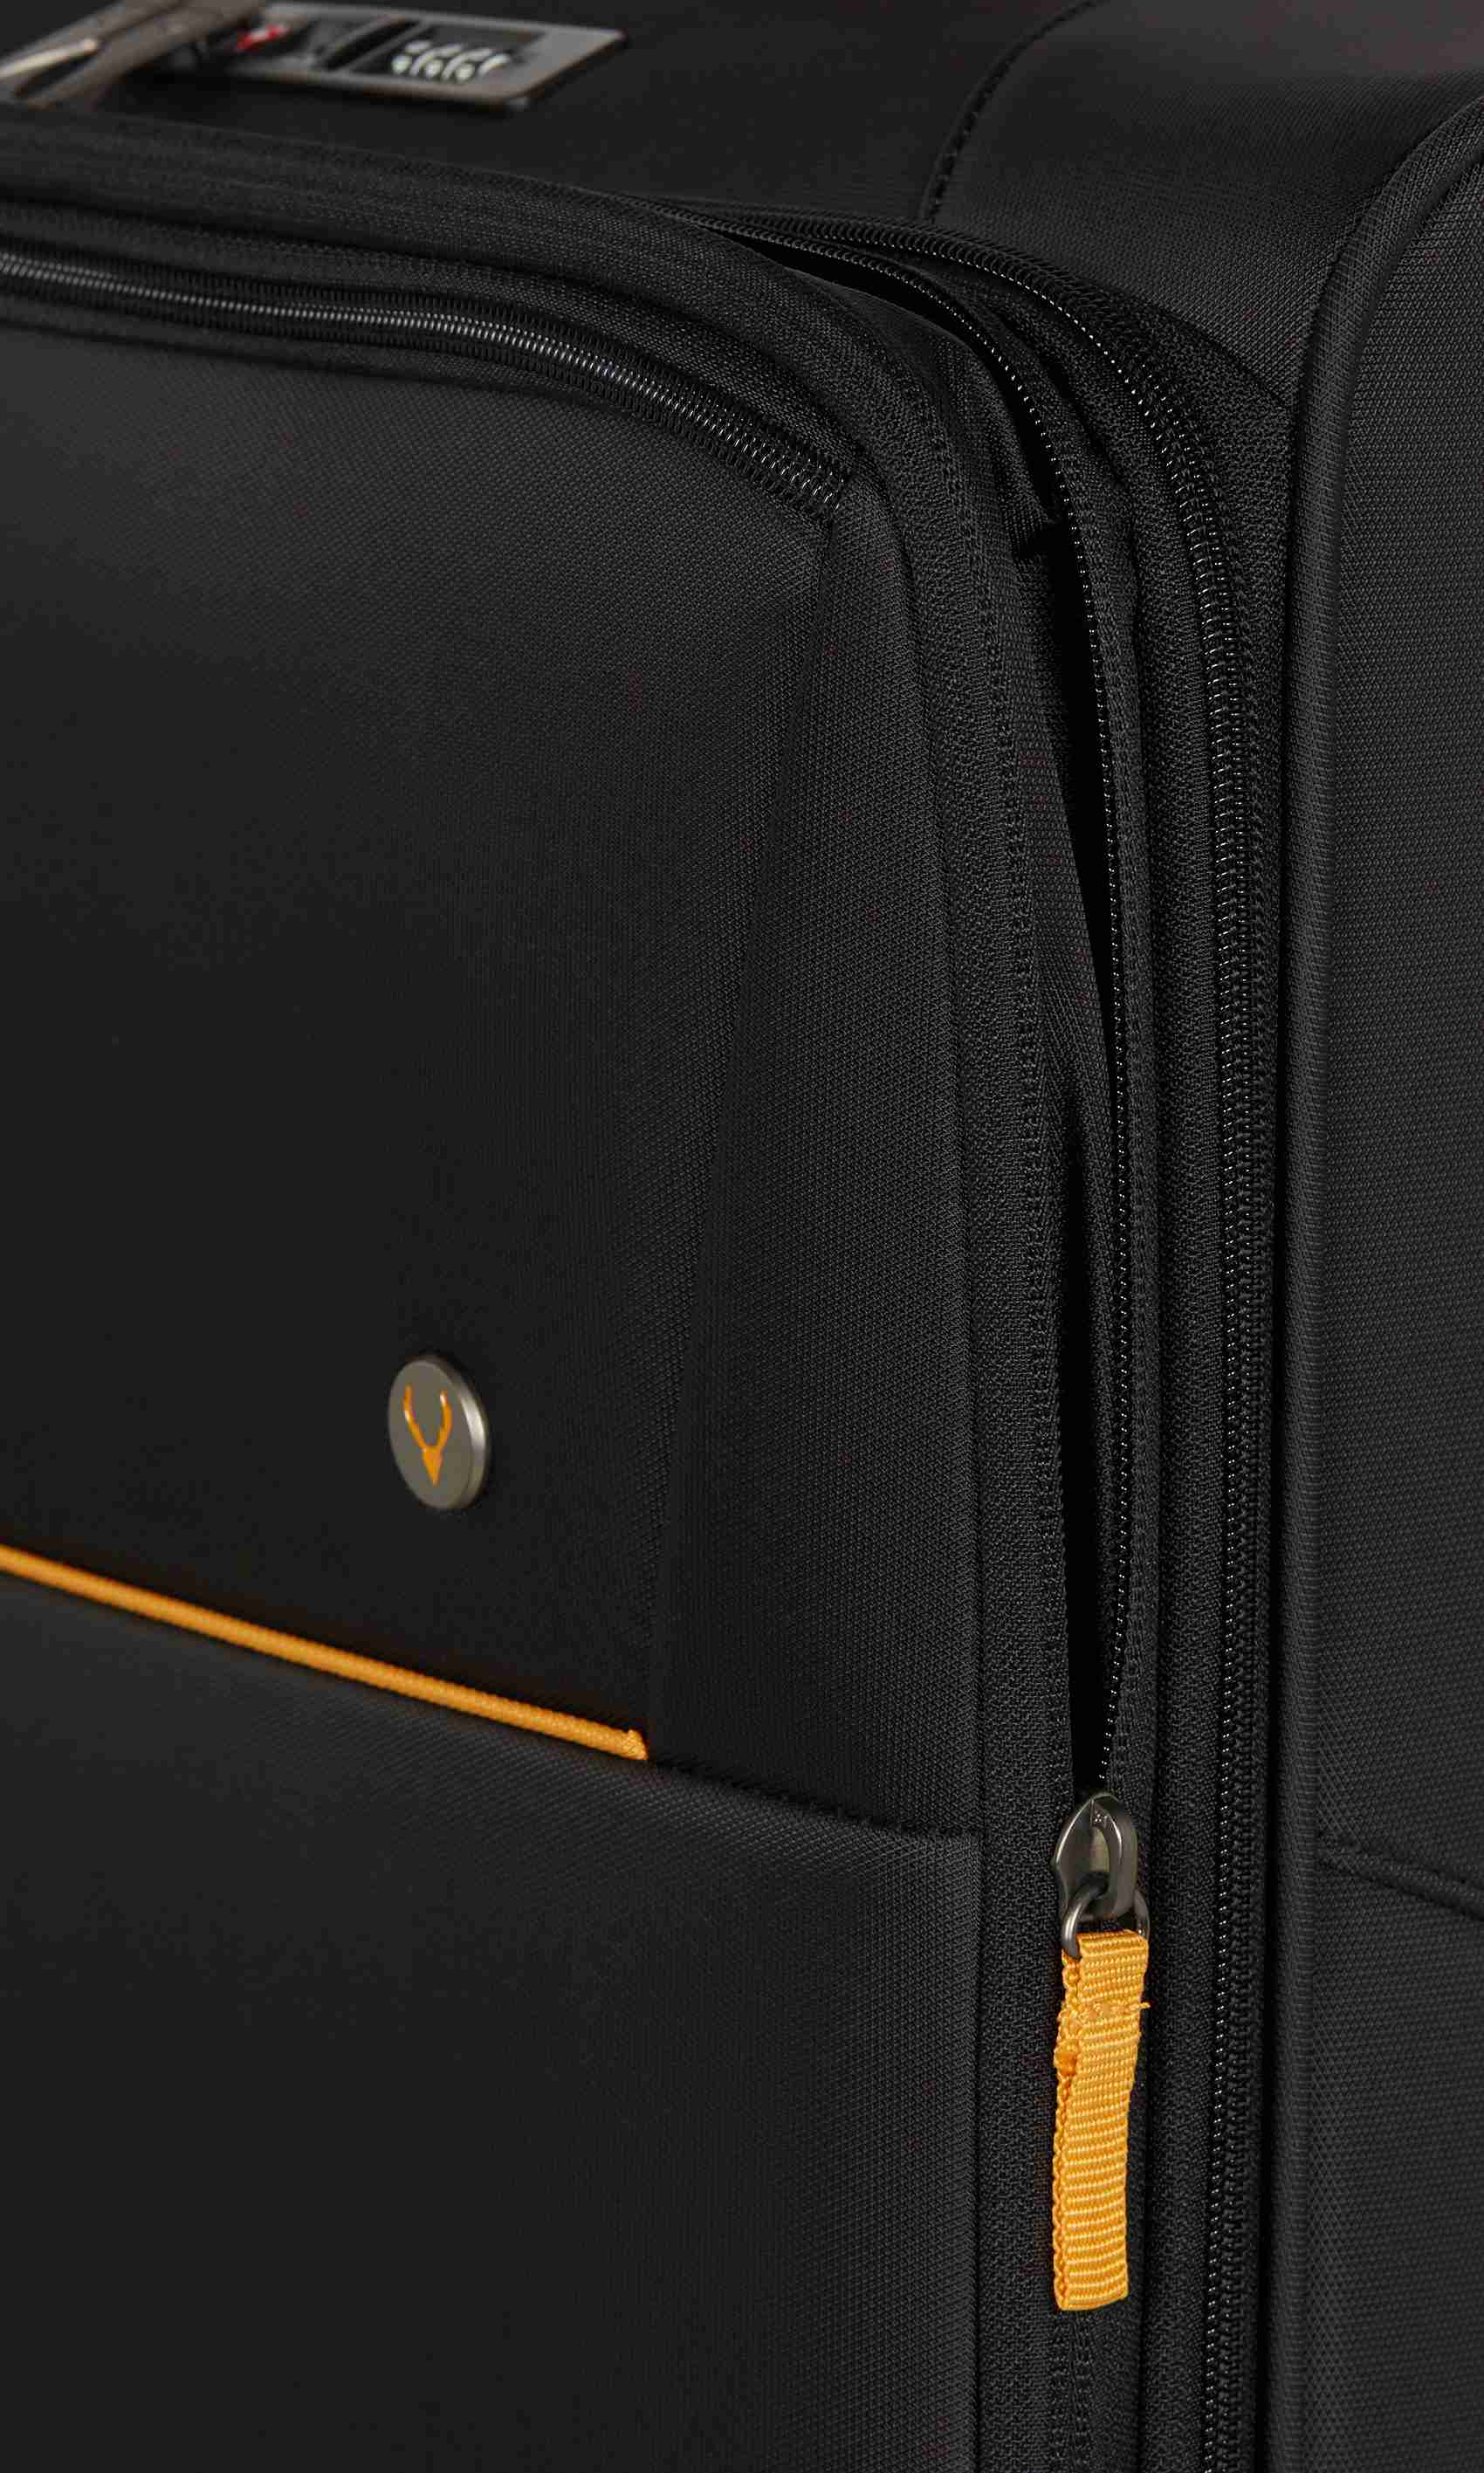 Brixham Large Suitcase Black | Soft Shell Suitcase – Antler UK